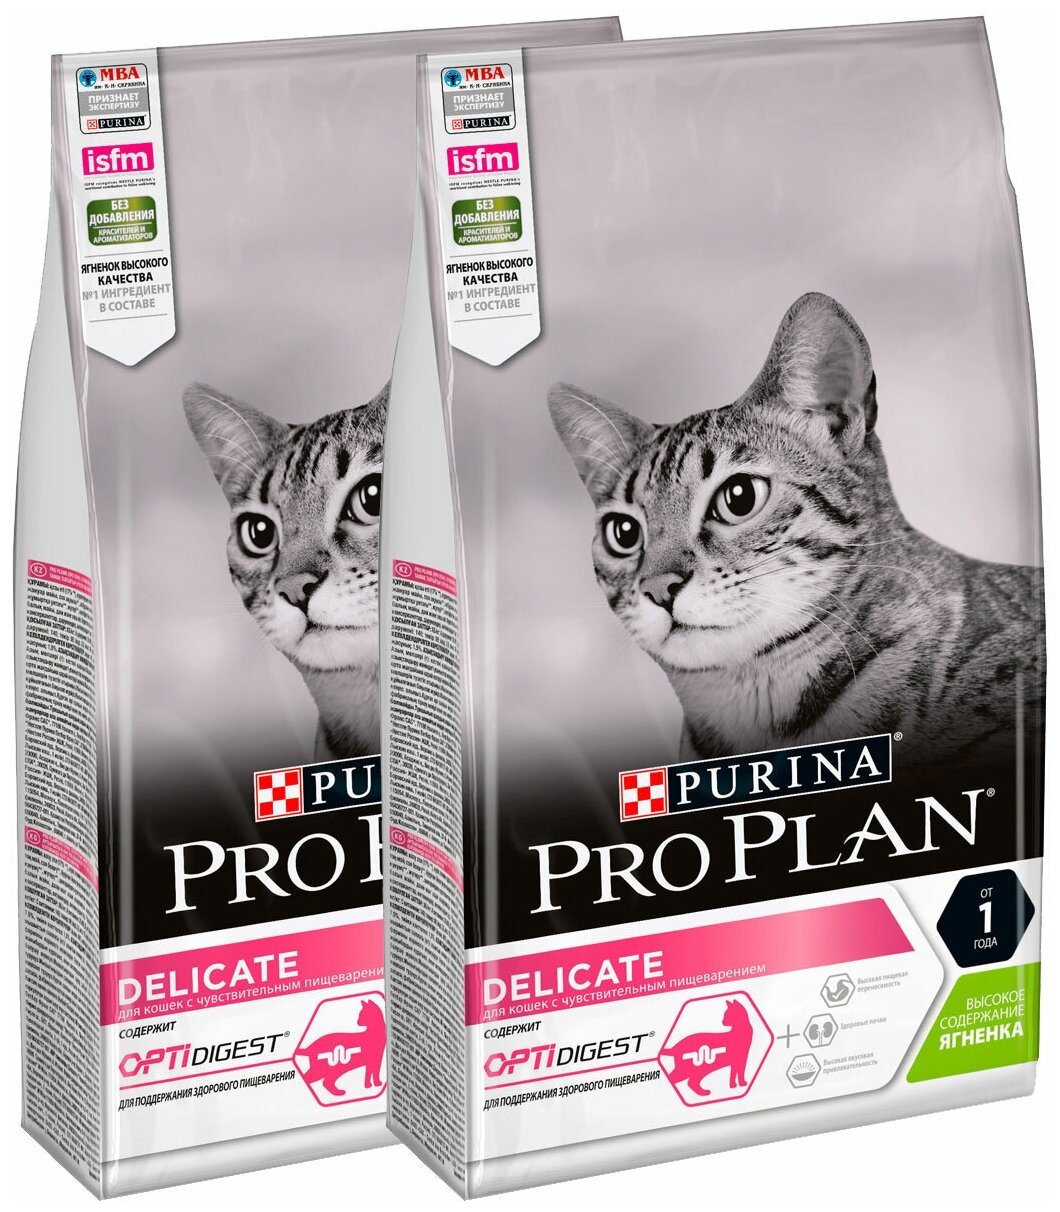 Сухой корм для кошек Pro Plan с чувствительным пищеварением или с особыми предпочтениями в еде, с ягненком 2 шт. х 10 кг